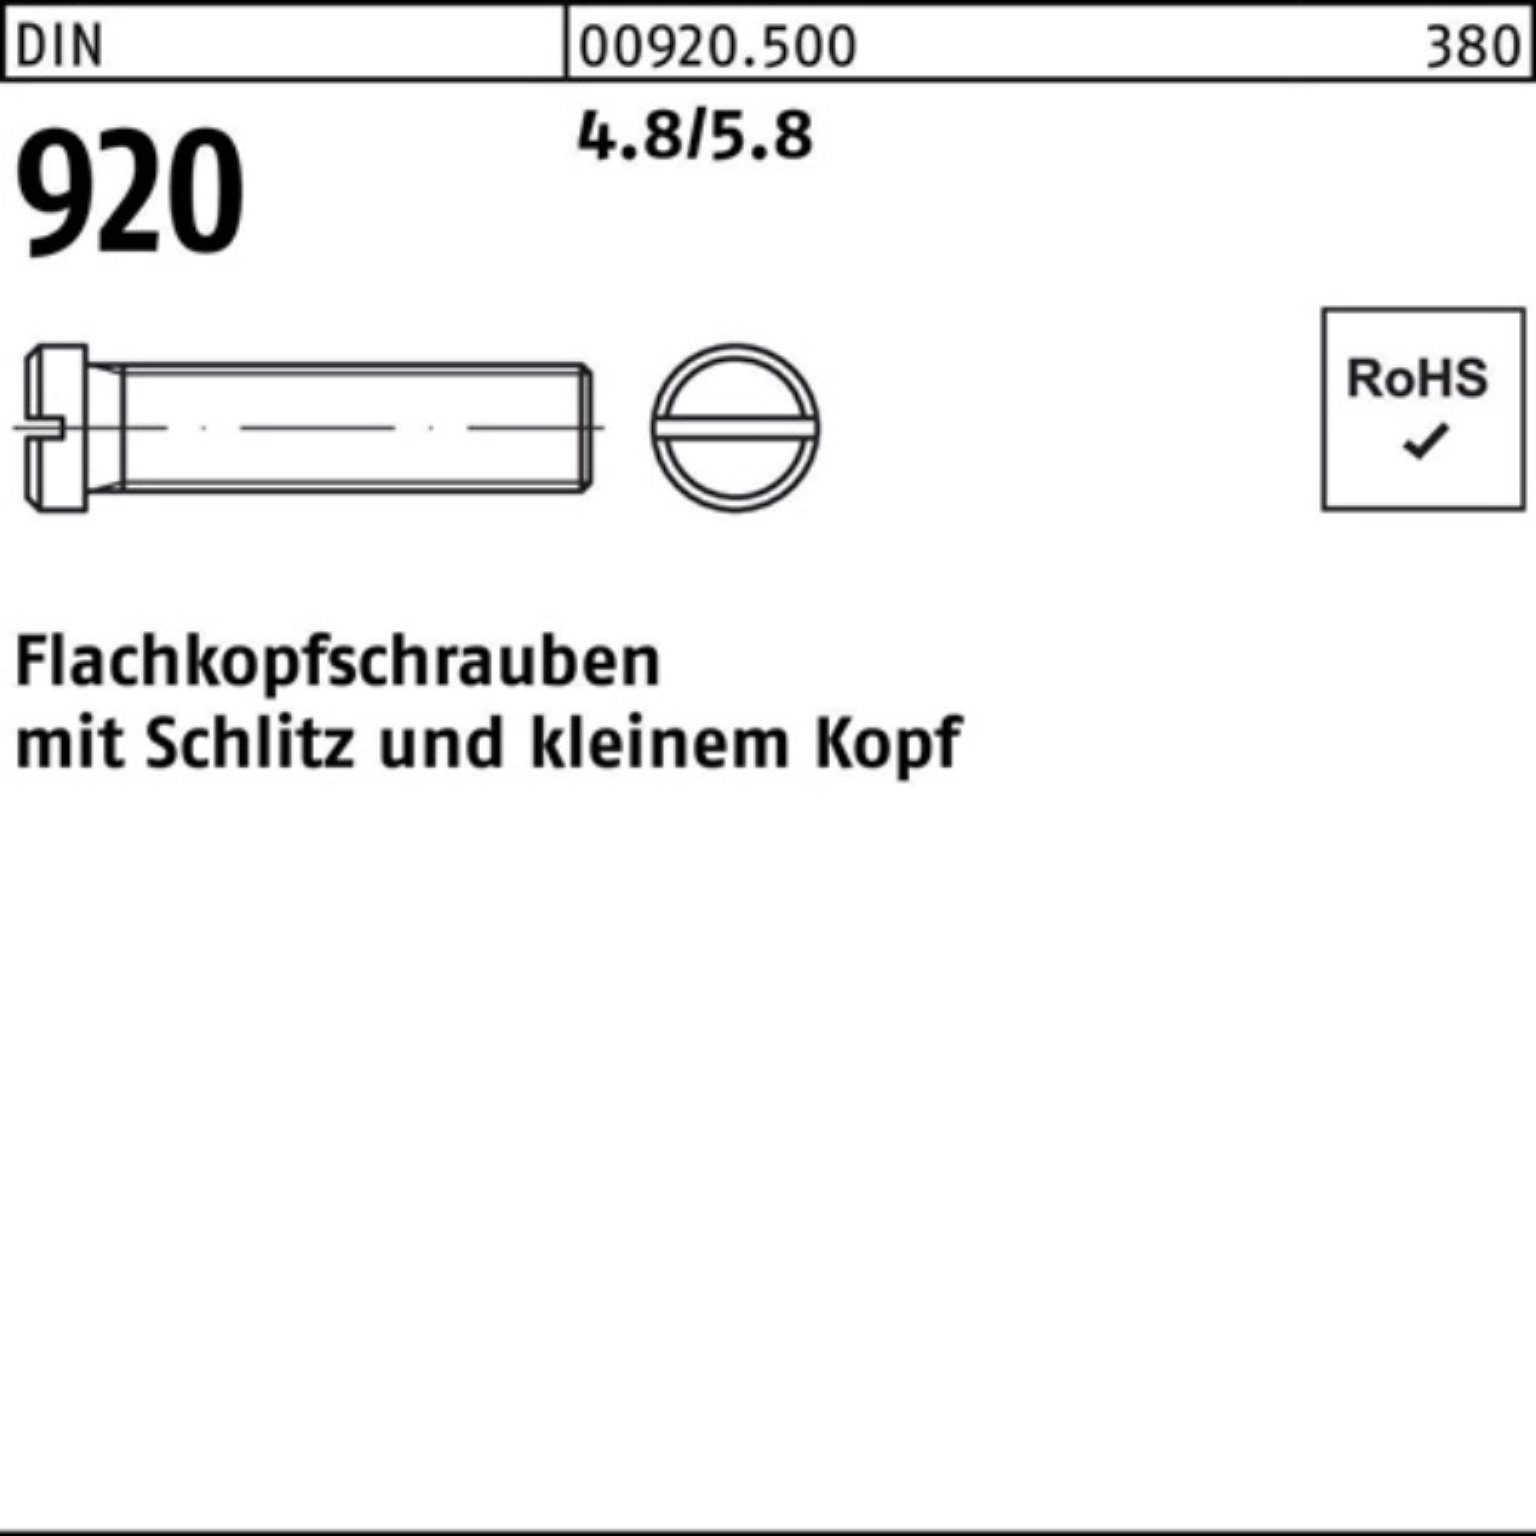 Reyher Schraube 100er Pack Flachkopfschraube DIN 920 Schlitz M3x 12 4.8/5.8 100 Stück